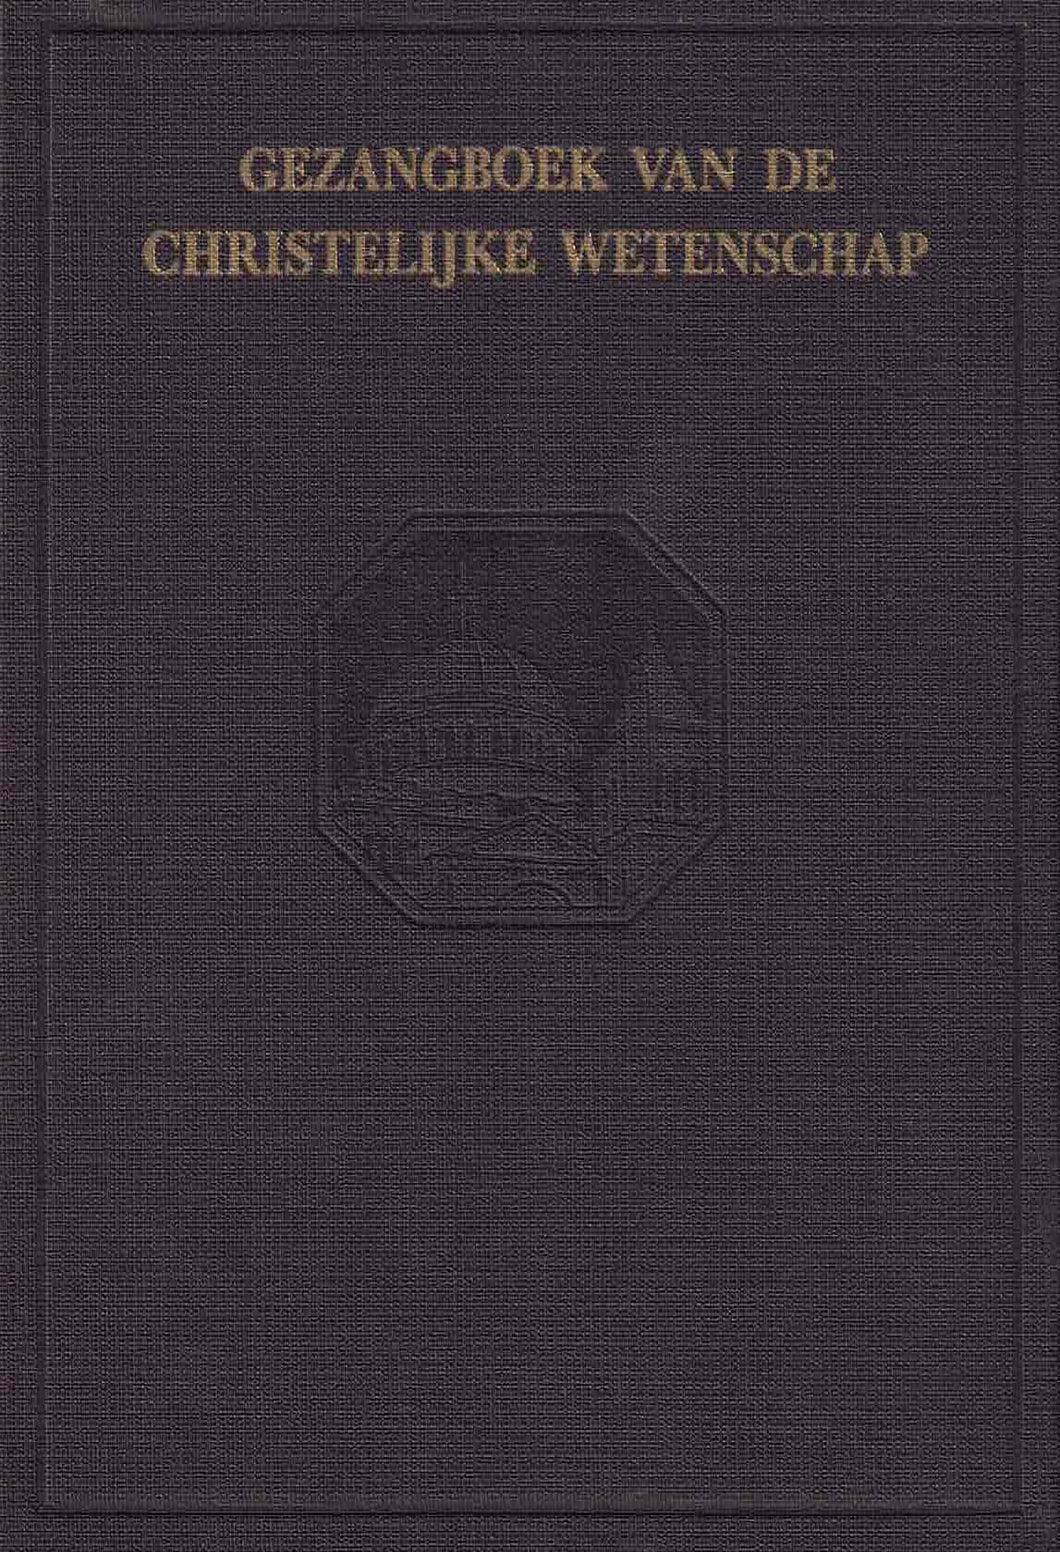 Gezangboek van de Christelijke Wetenschap